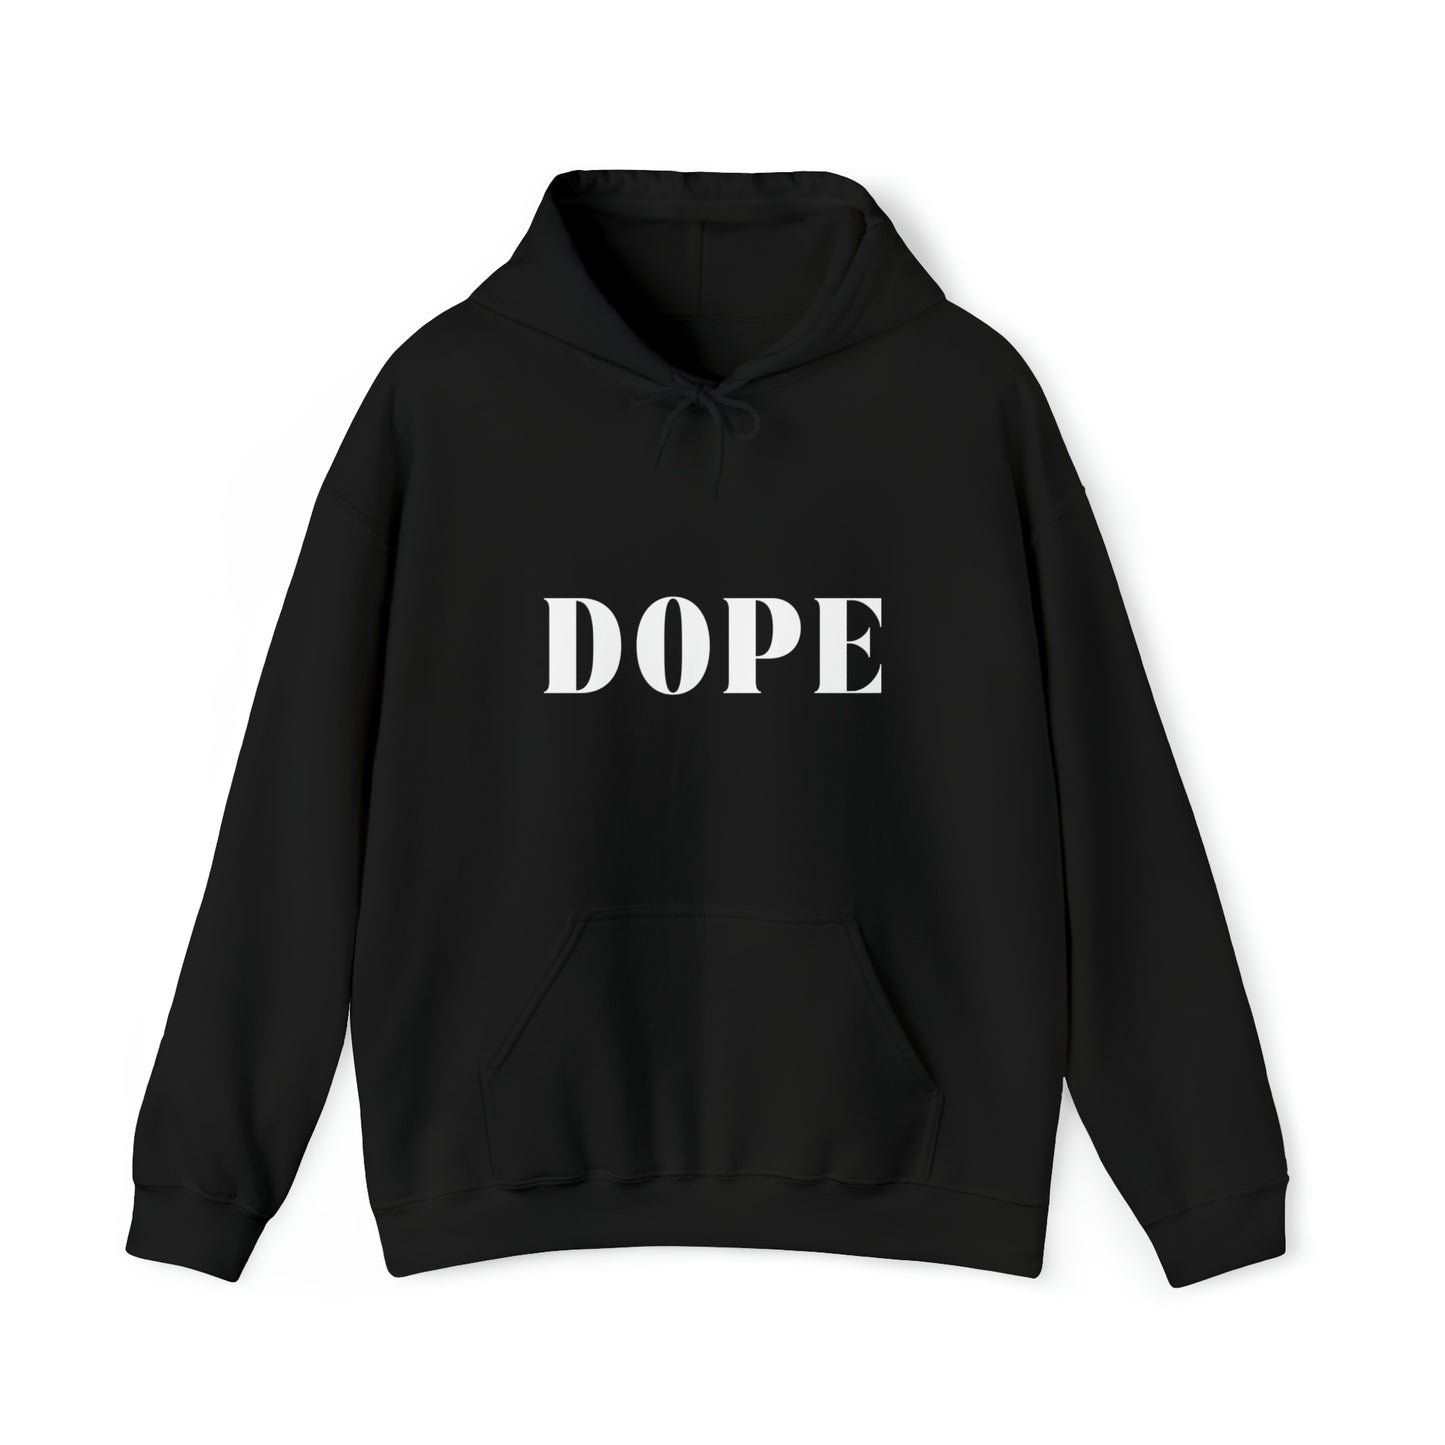 S Black Dope Hoodie from HoodySZN.com